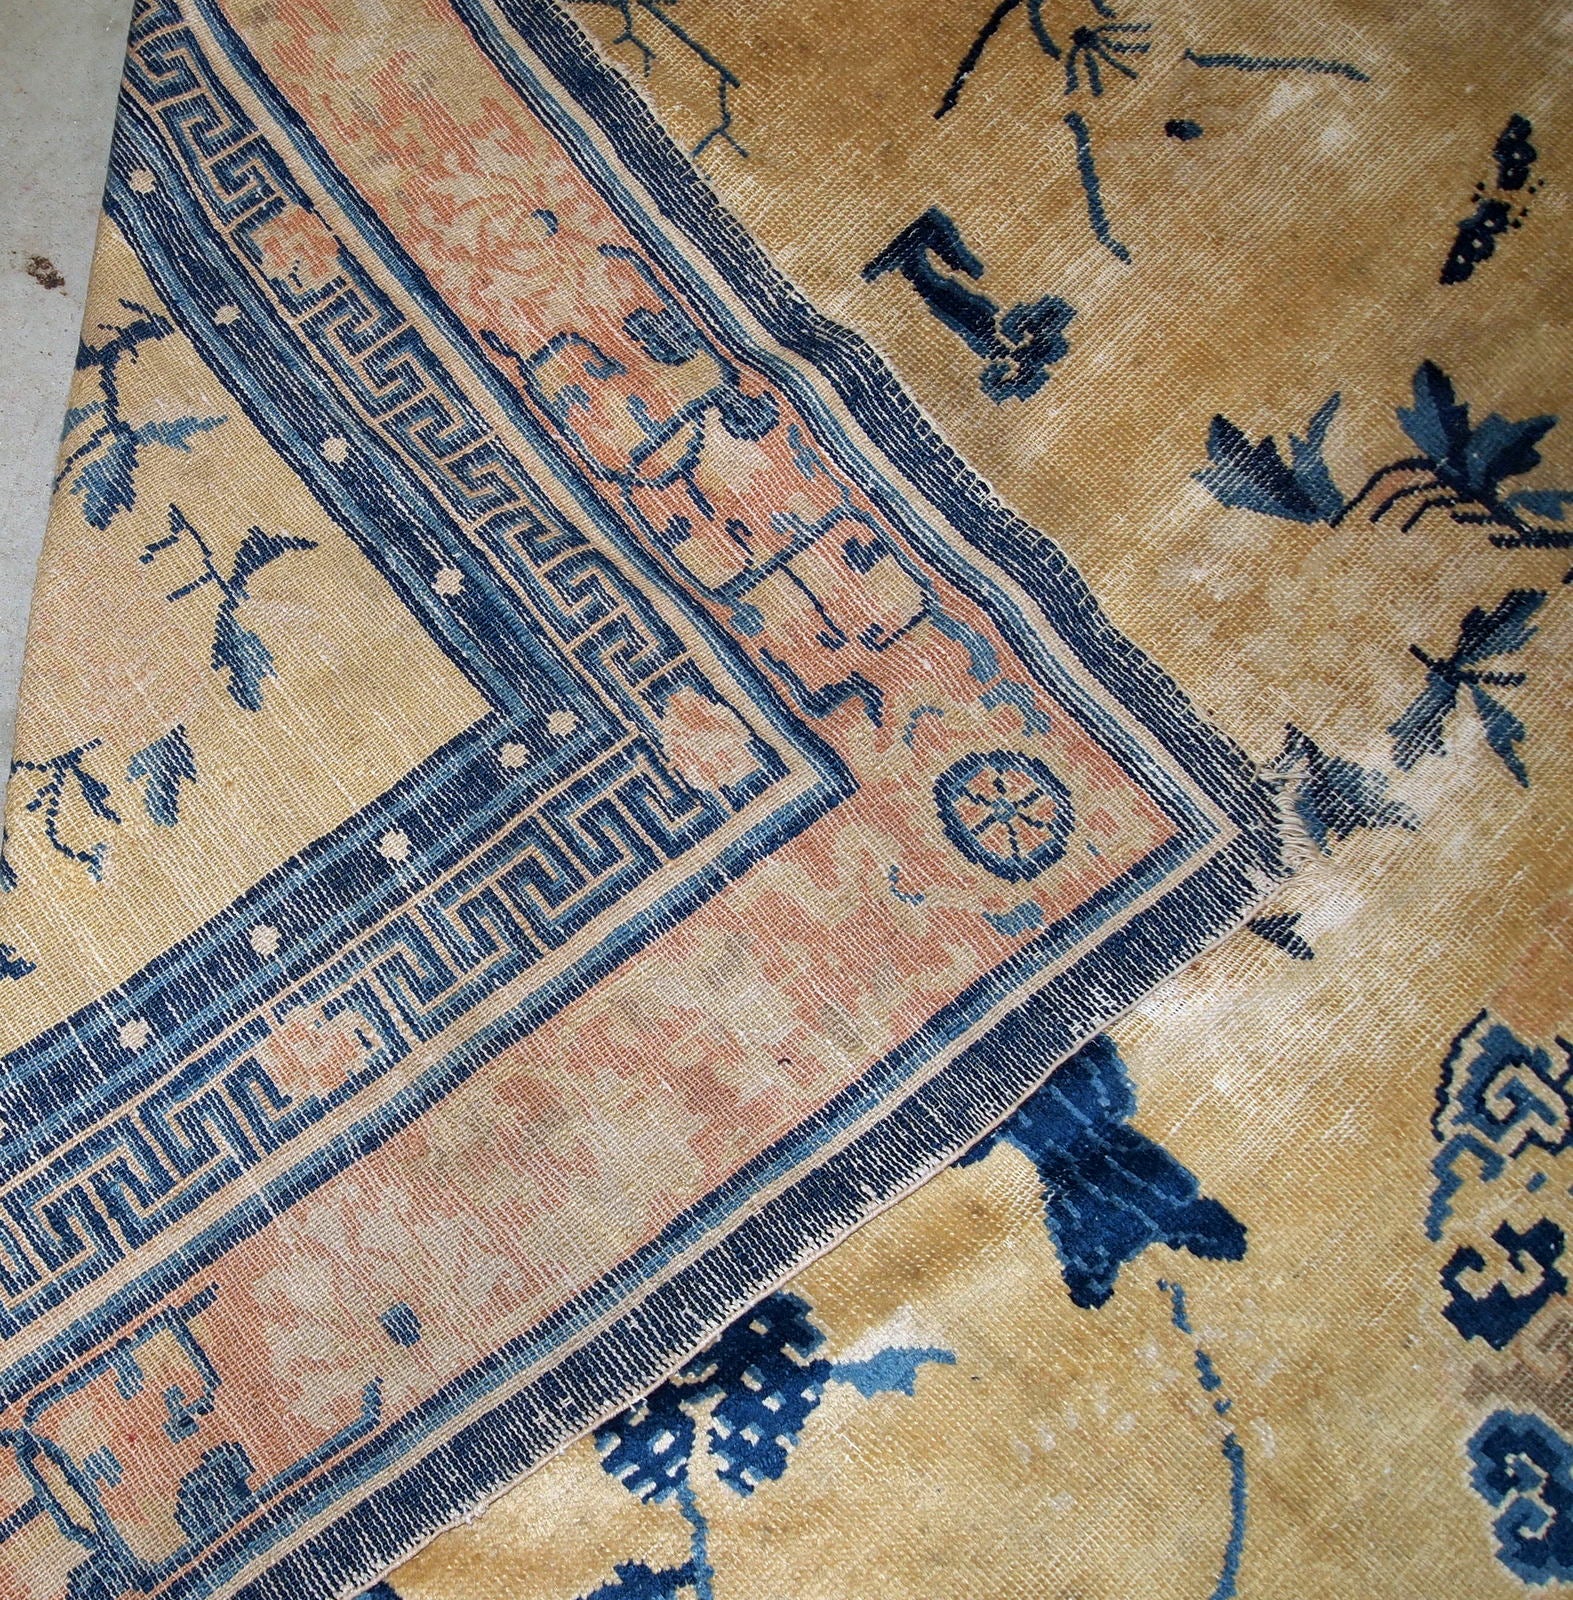 Handmade antique Chinese Ningsha rug, 1870s